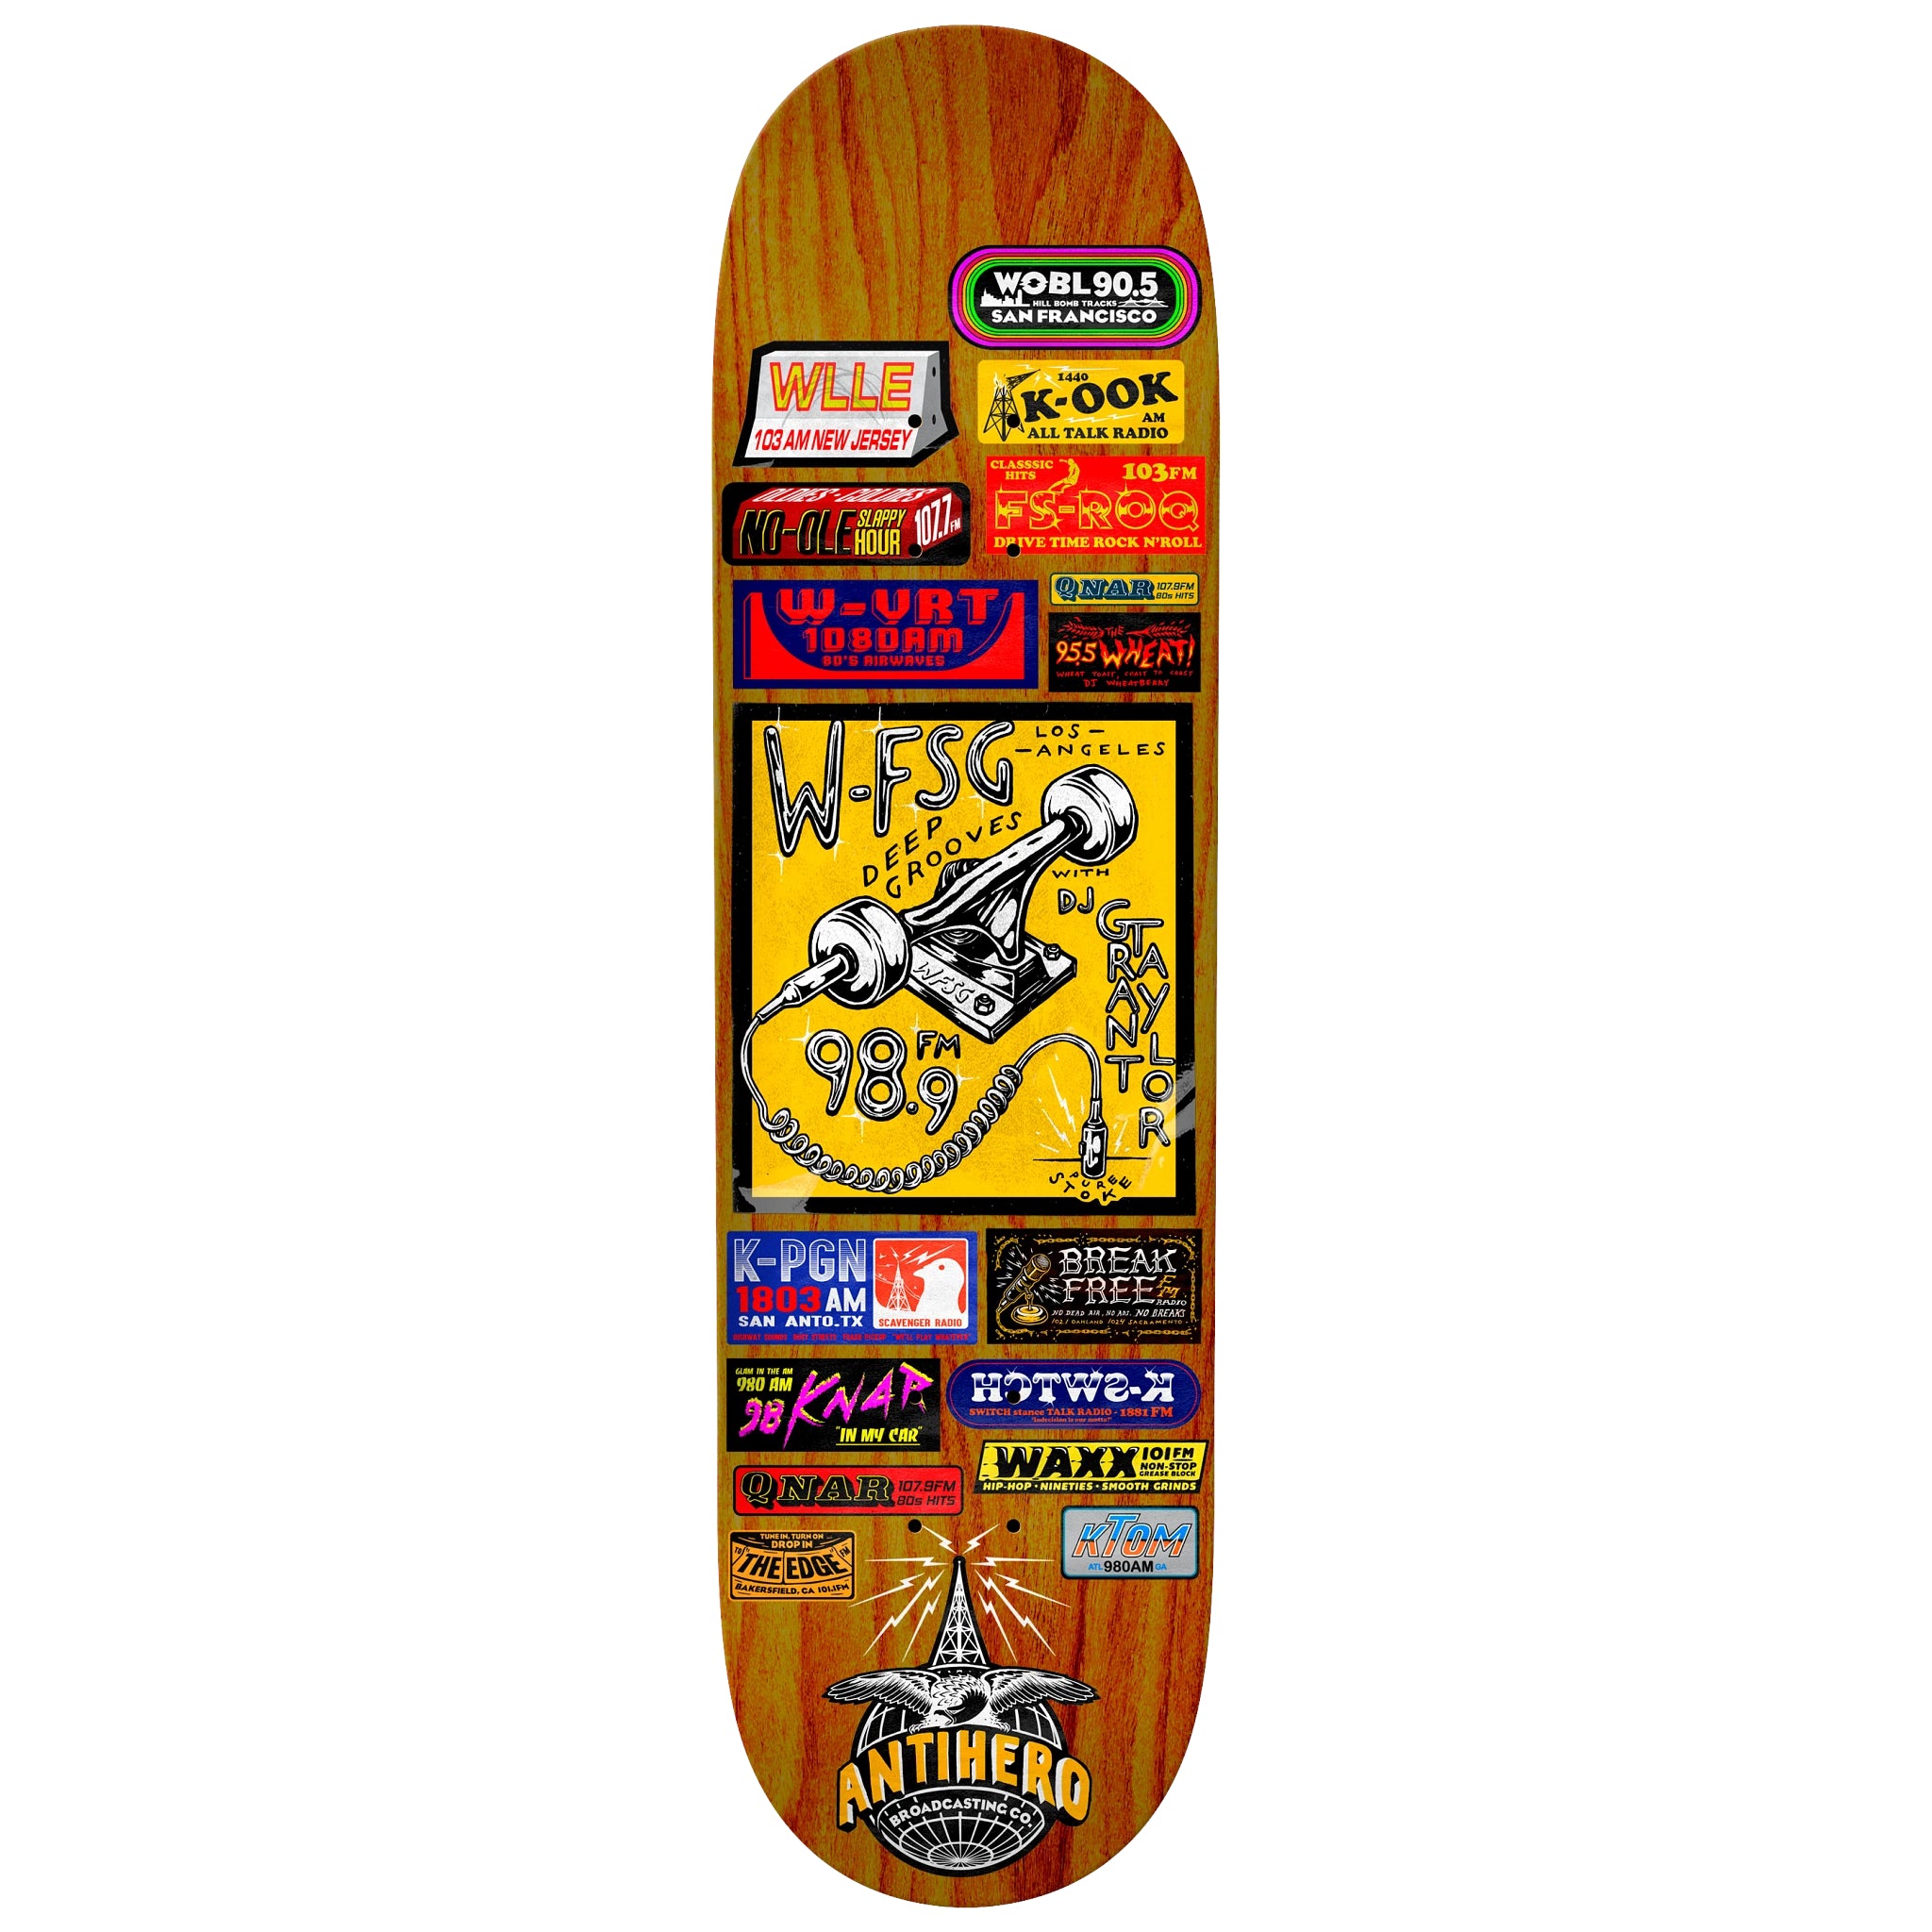 Grant Taylor Broadcasting AntiHero Skateboard Deck